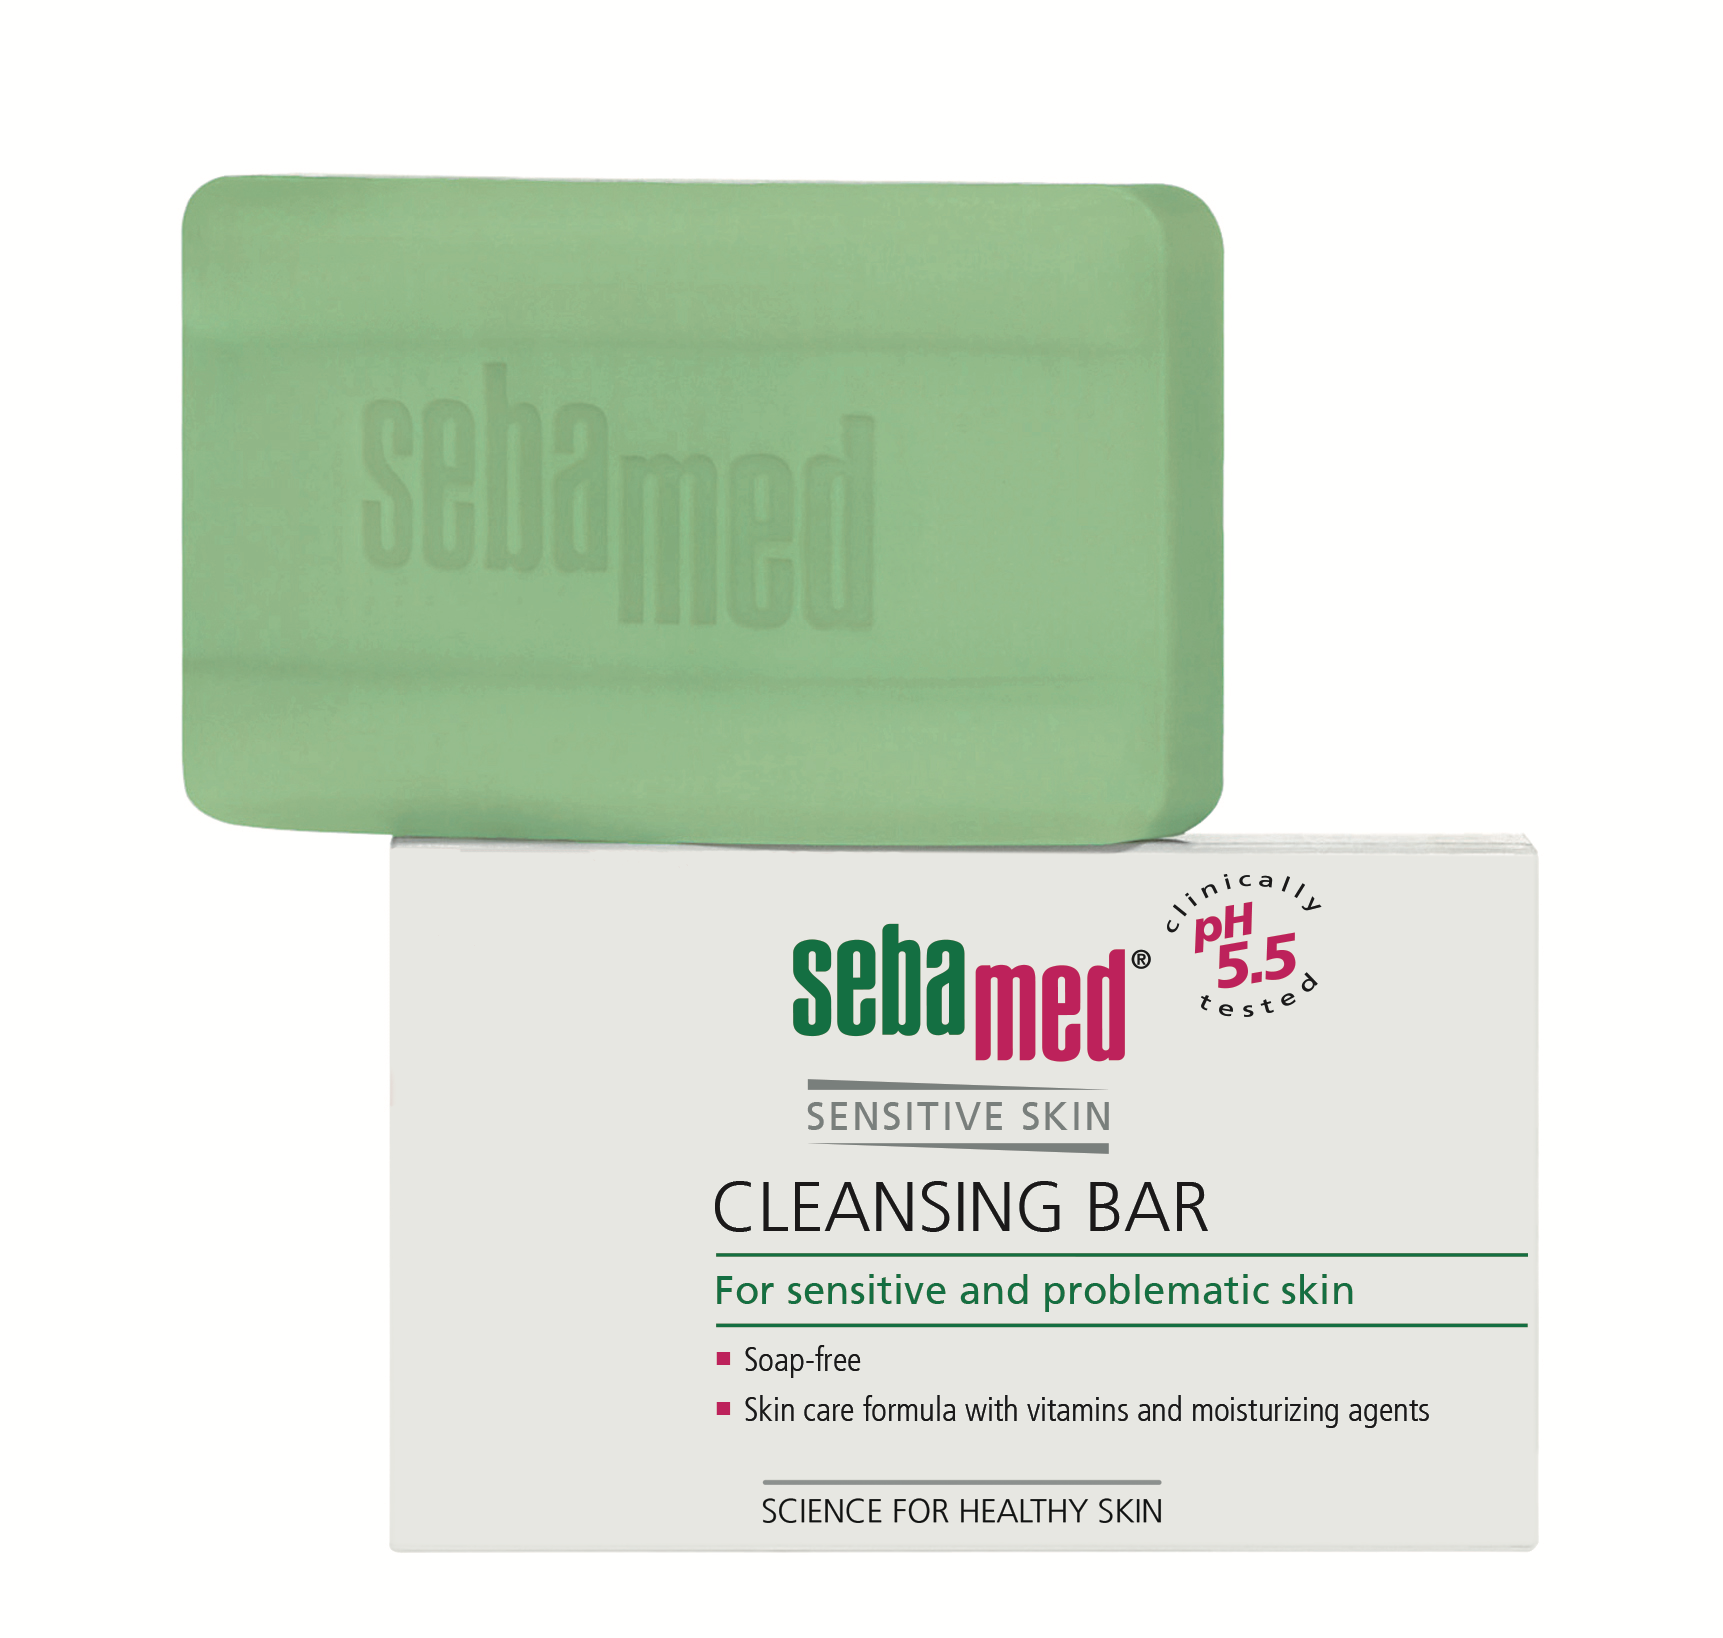 Îngrijirea pielii - Sebamed Sensitive Skin Calup dermatologic fără săpun * 100 g, clinicafarm.ro